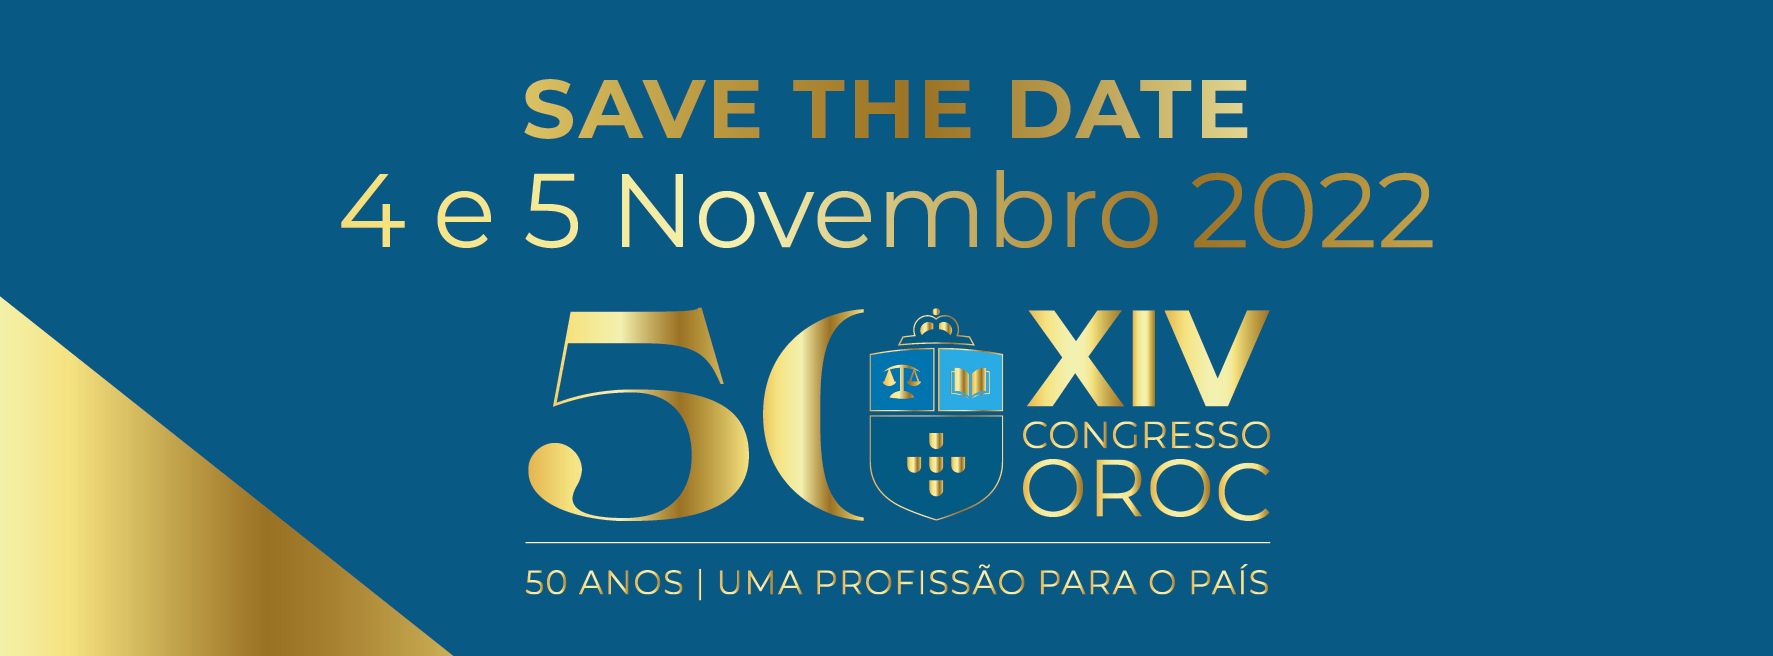 Save the Date OROC 4 e 5 de Novembro